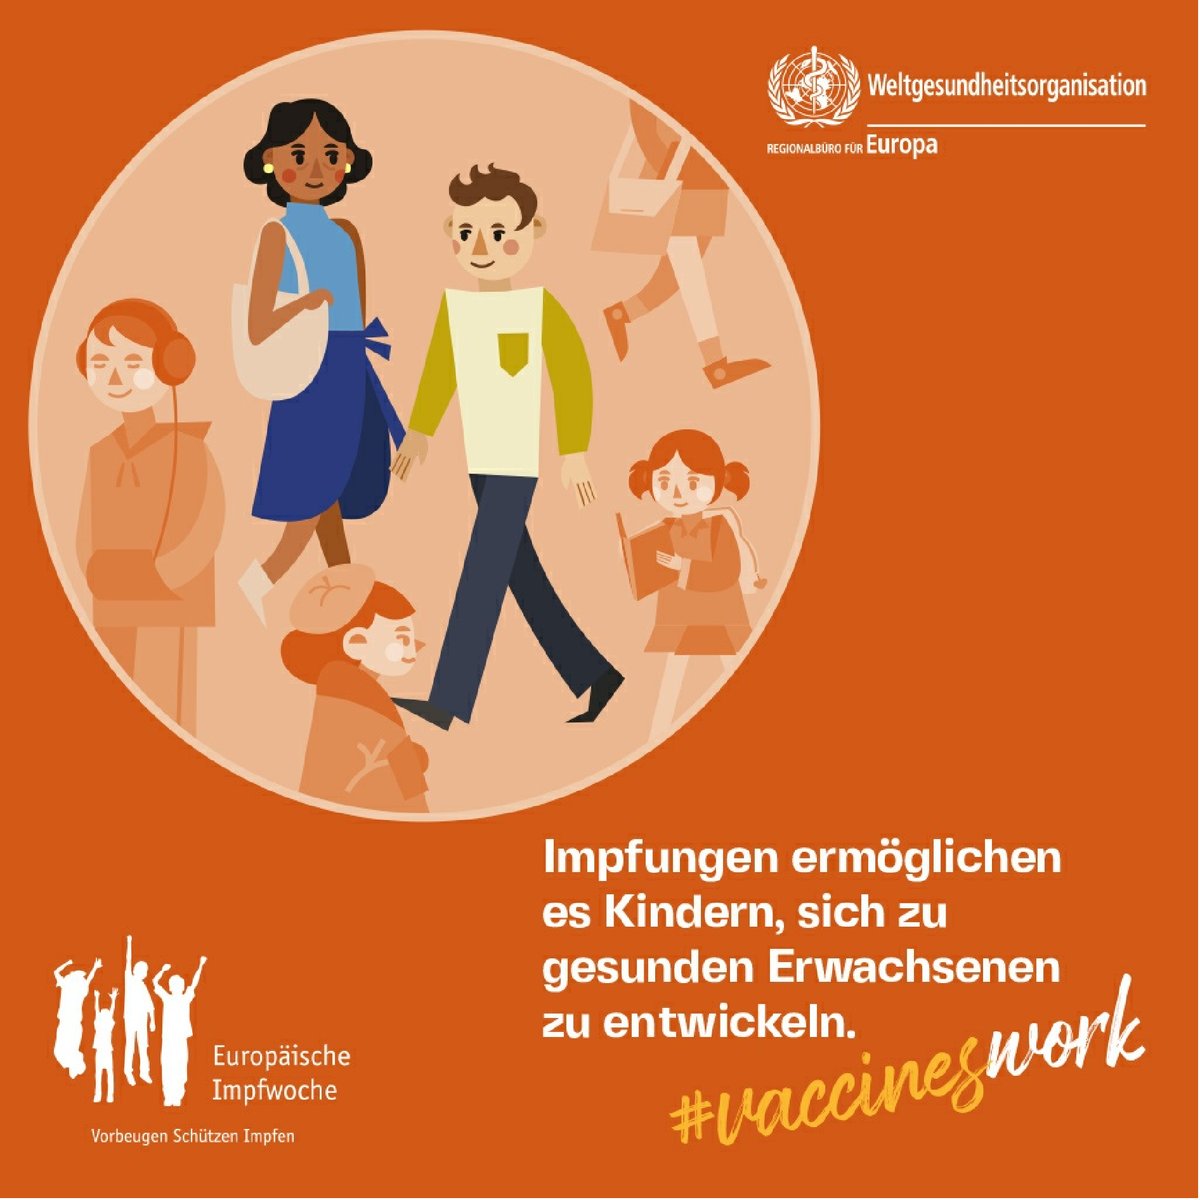 Europäische Impfwoche: Impfungen schützen Menschen jeden Alters. Jedes Kind hat das Recht darauf. Gesundheitsfachkräfte sind als #vaccineheroes vertrauenswürdige Infoquelle & Vorkämpfer für #Impfungen.

#protectedtogether #VaccinesWork #HealthForAll 

euro.who.int/de/media-centr…